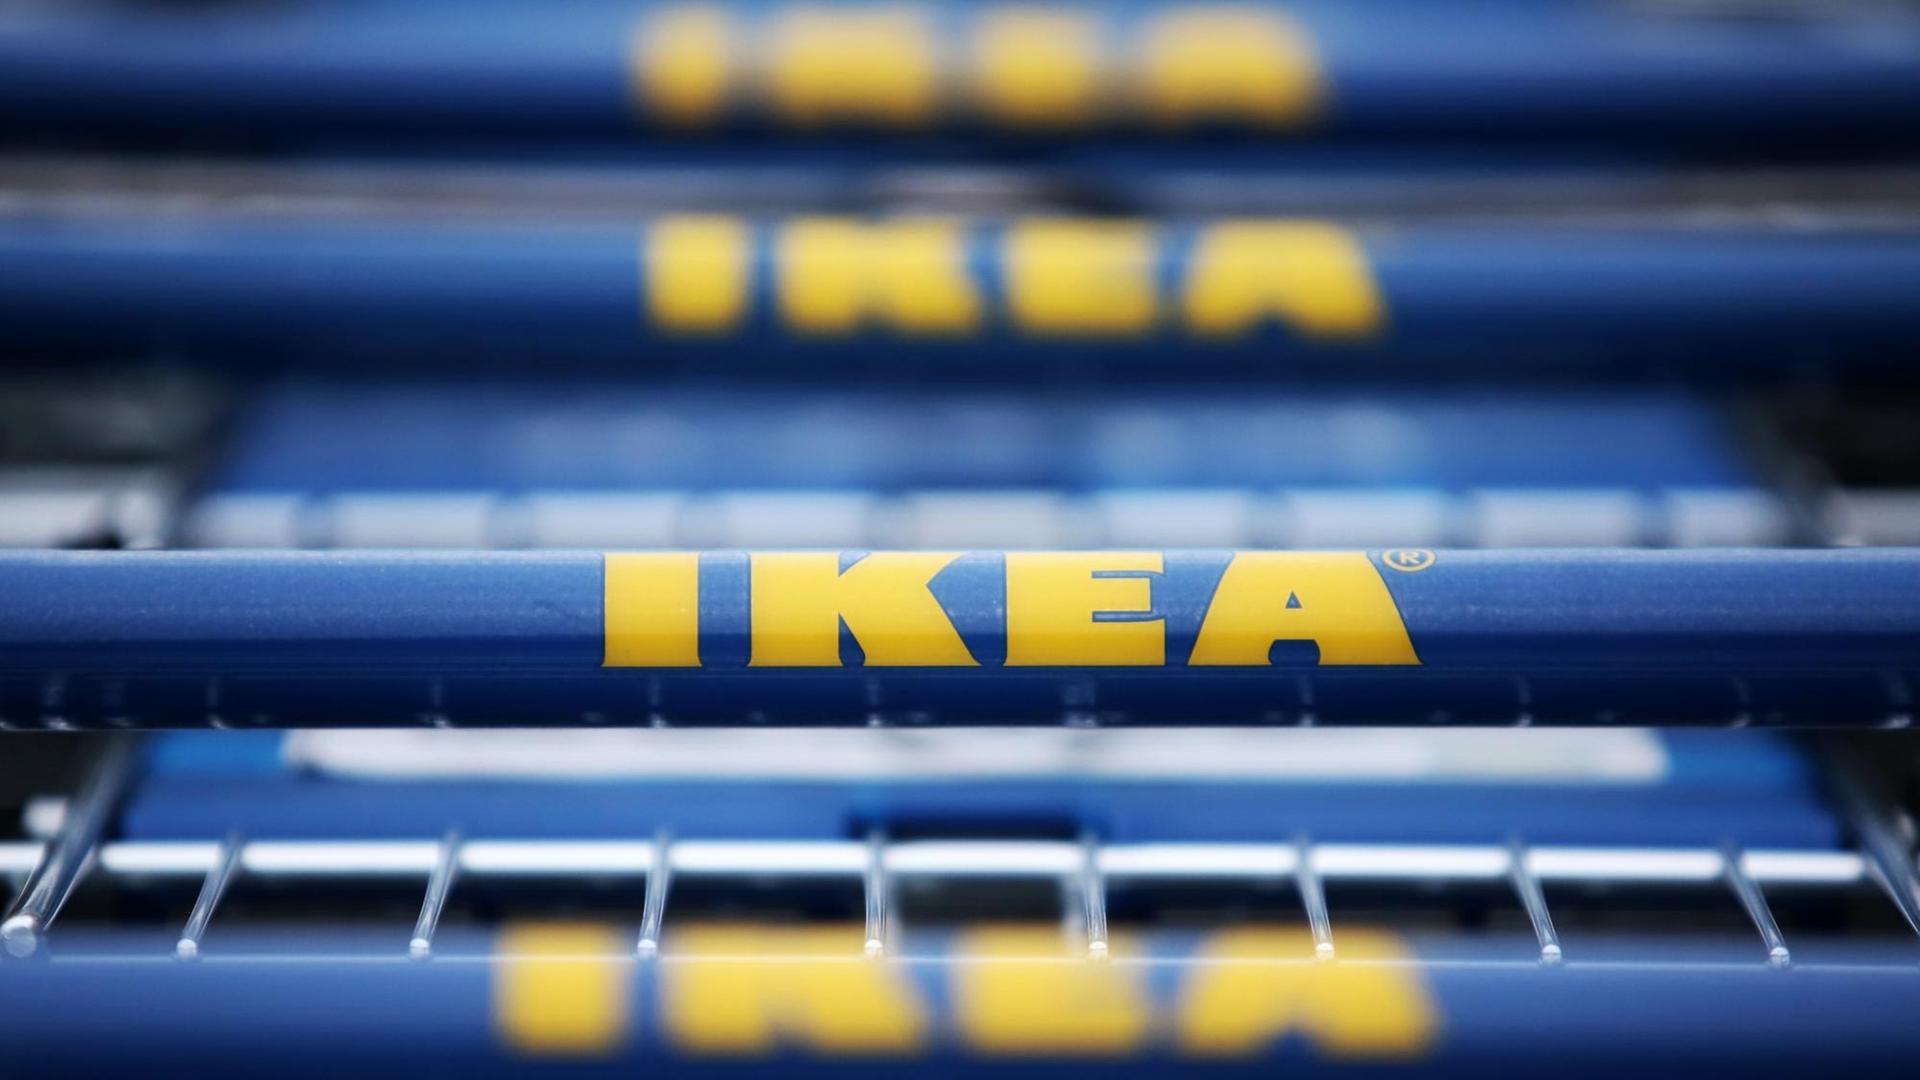 Vor einem Gebäude des schwedischen Möbelhauses Ikea stehen am 13.10.2015 in Hofheim-Wallau (Hessen) Einkaufswagen mit dem Logo des Unternehmens.